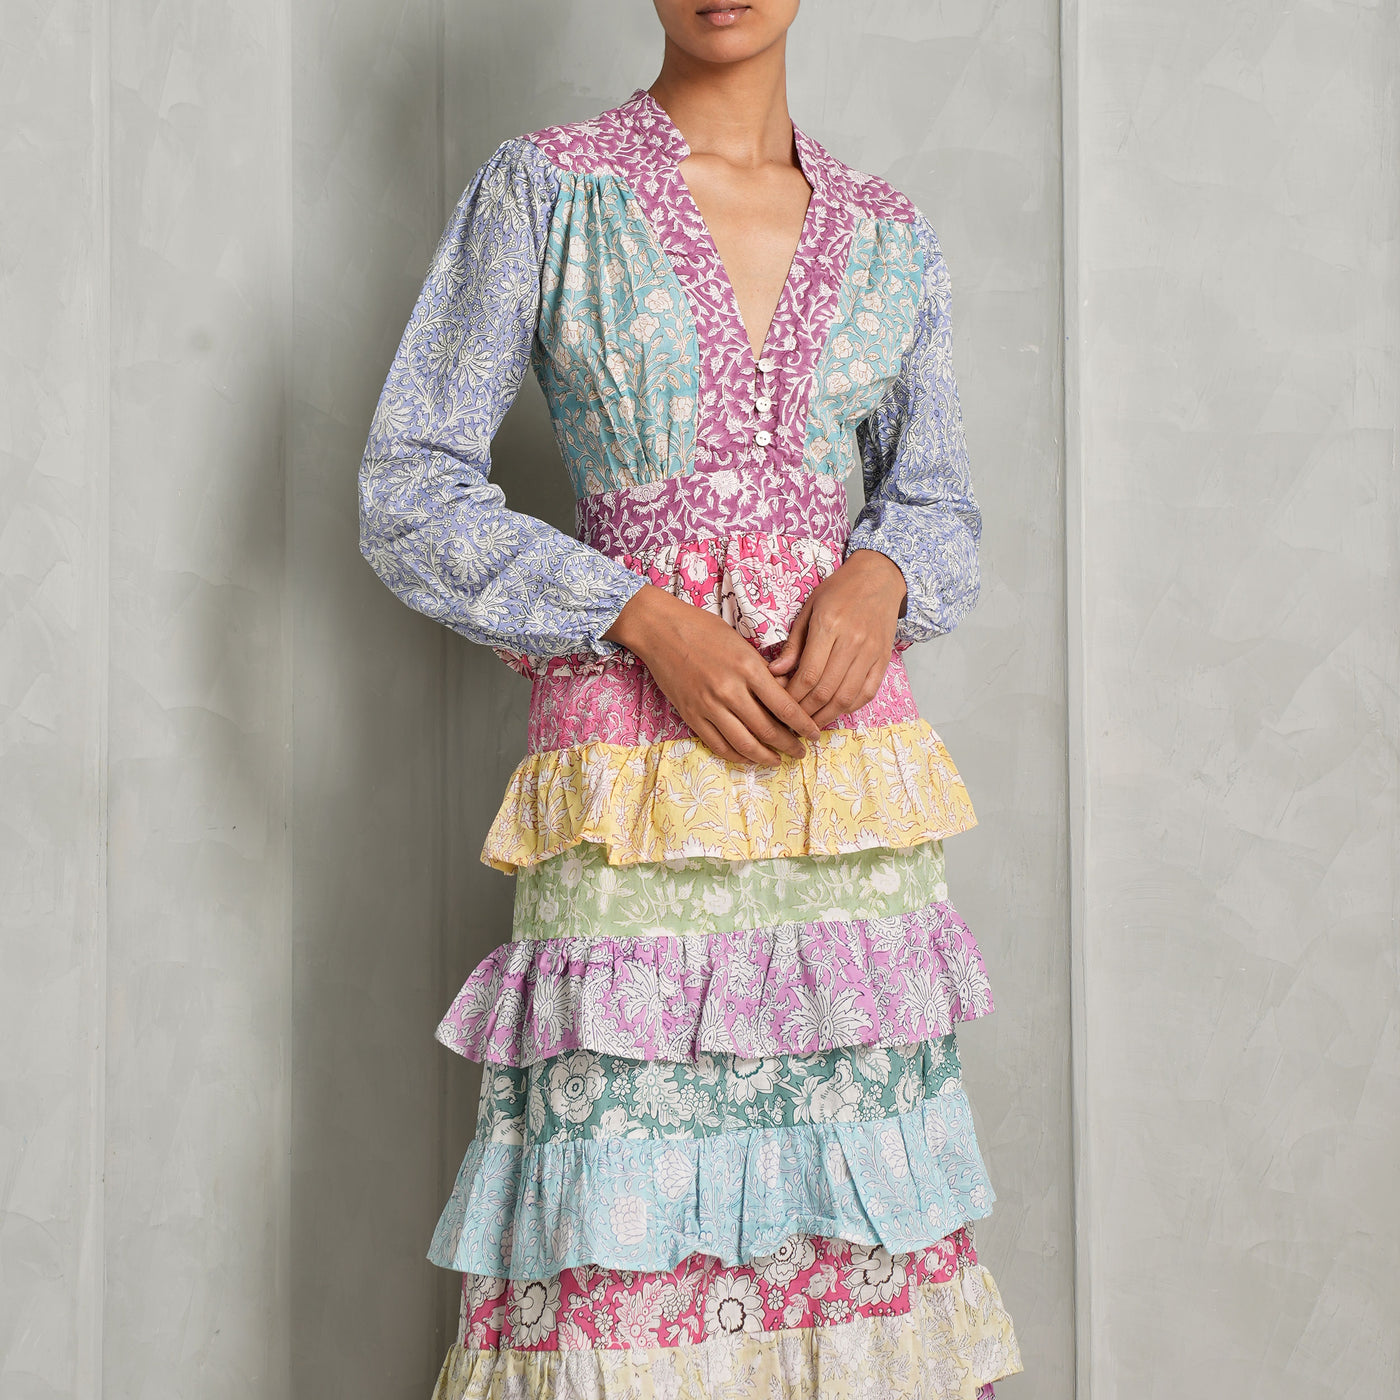 THE PDKF STORE Mumbai Ruffled multicolored  Dress